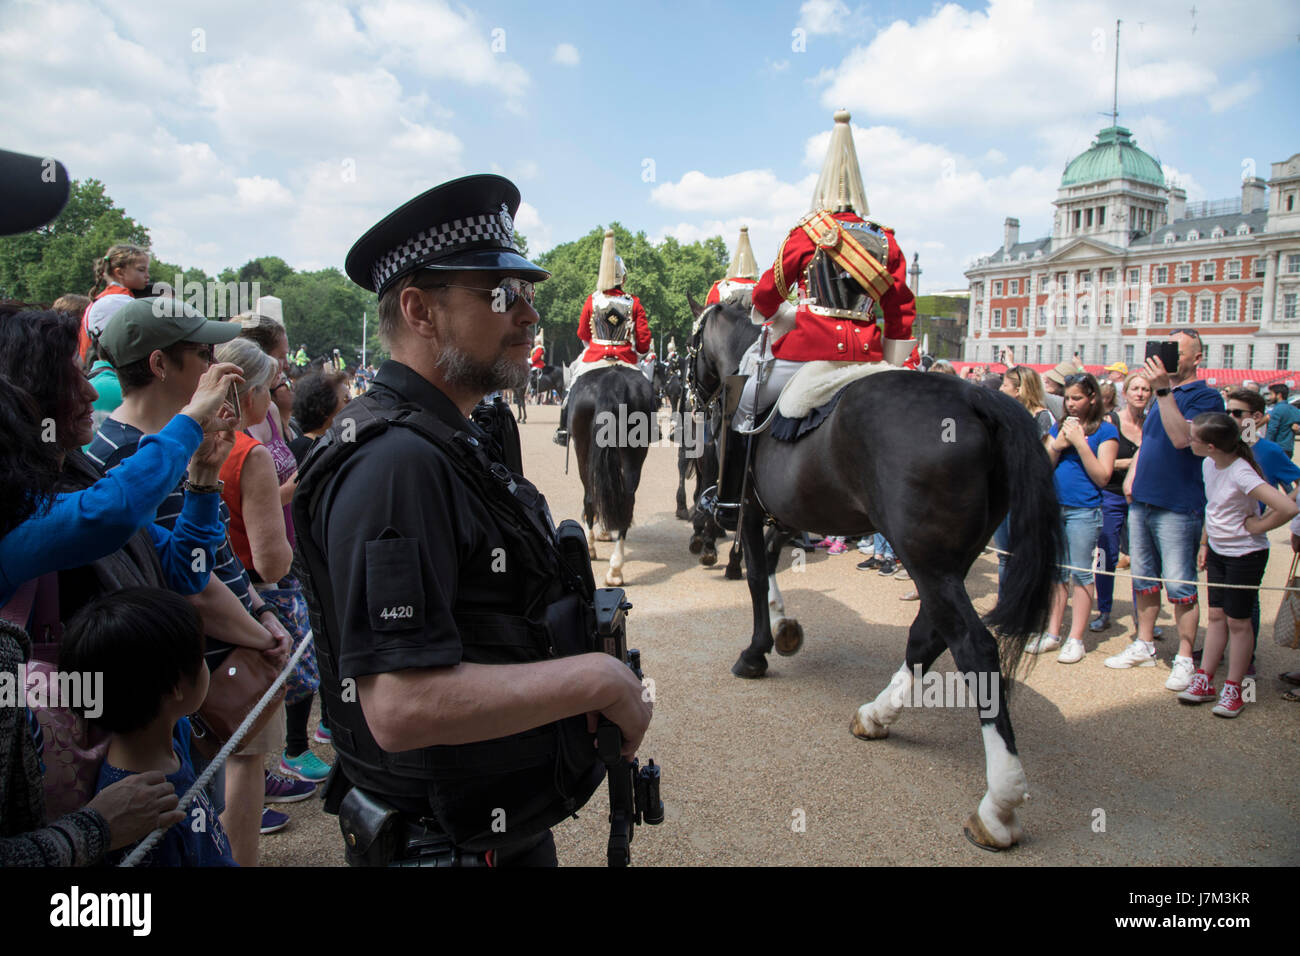 À la suite des récentes attaques terroristes, la sécurité est renforcée avec plus de policiers armés dans les rues, les services de police importants bâtiments, comme ici à Horse Guards Parade au cours de l'évolution de la Garde côtière canadienne à Londres, Angleterre, Royaume-Uni. Banque D'Images